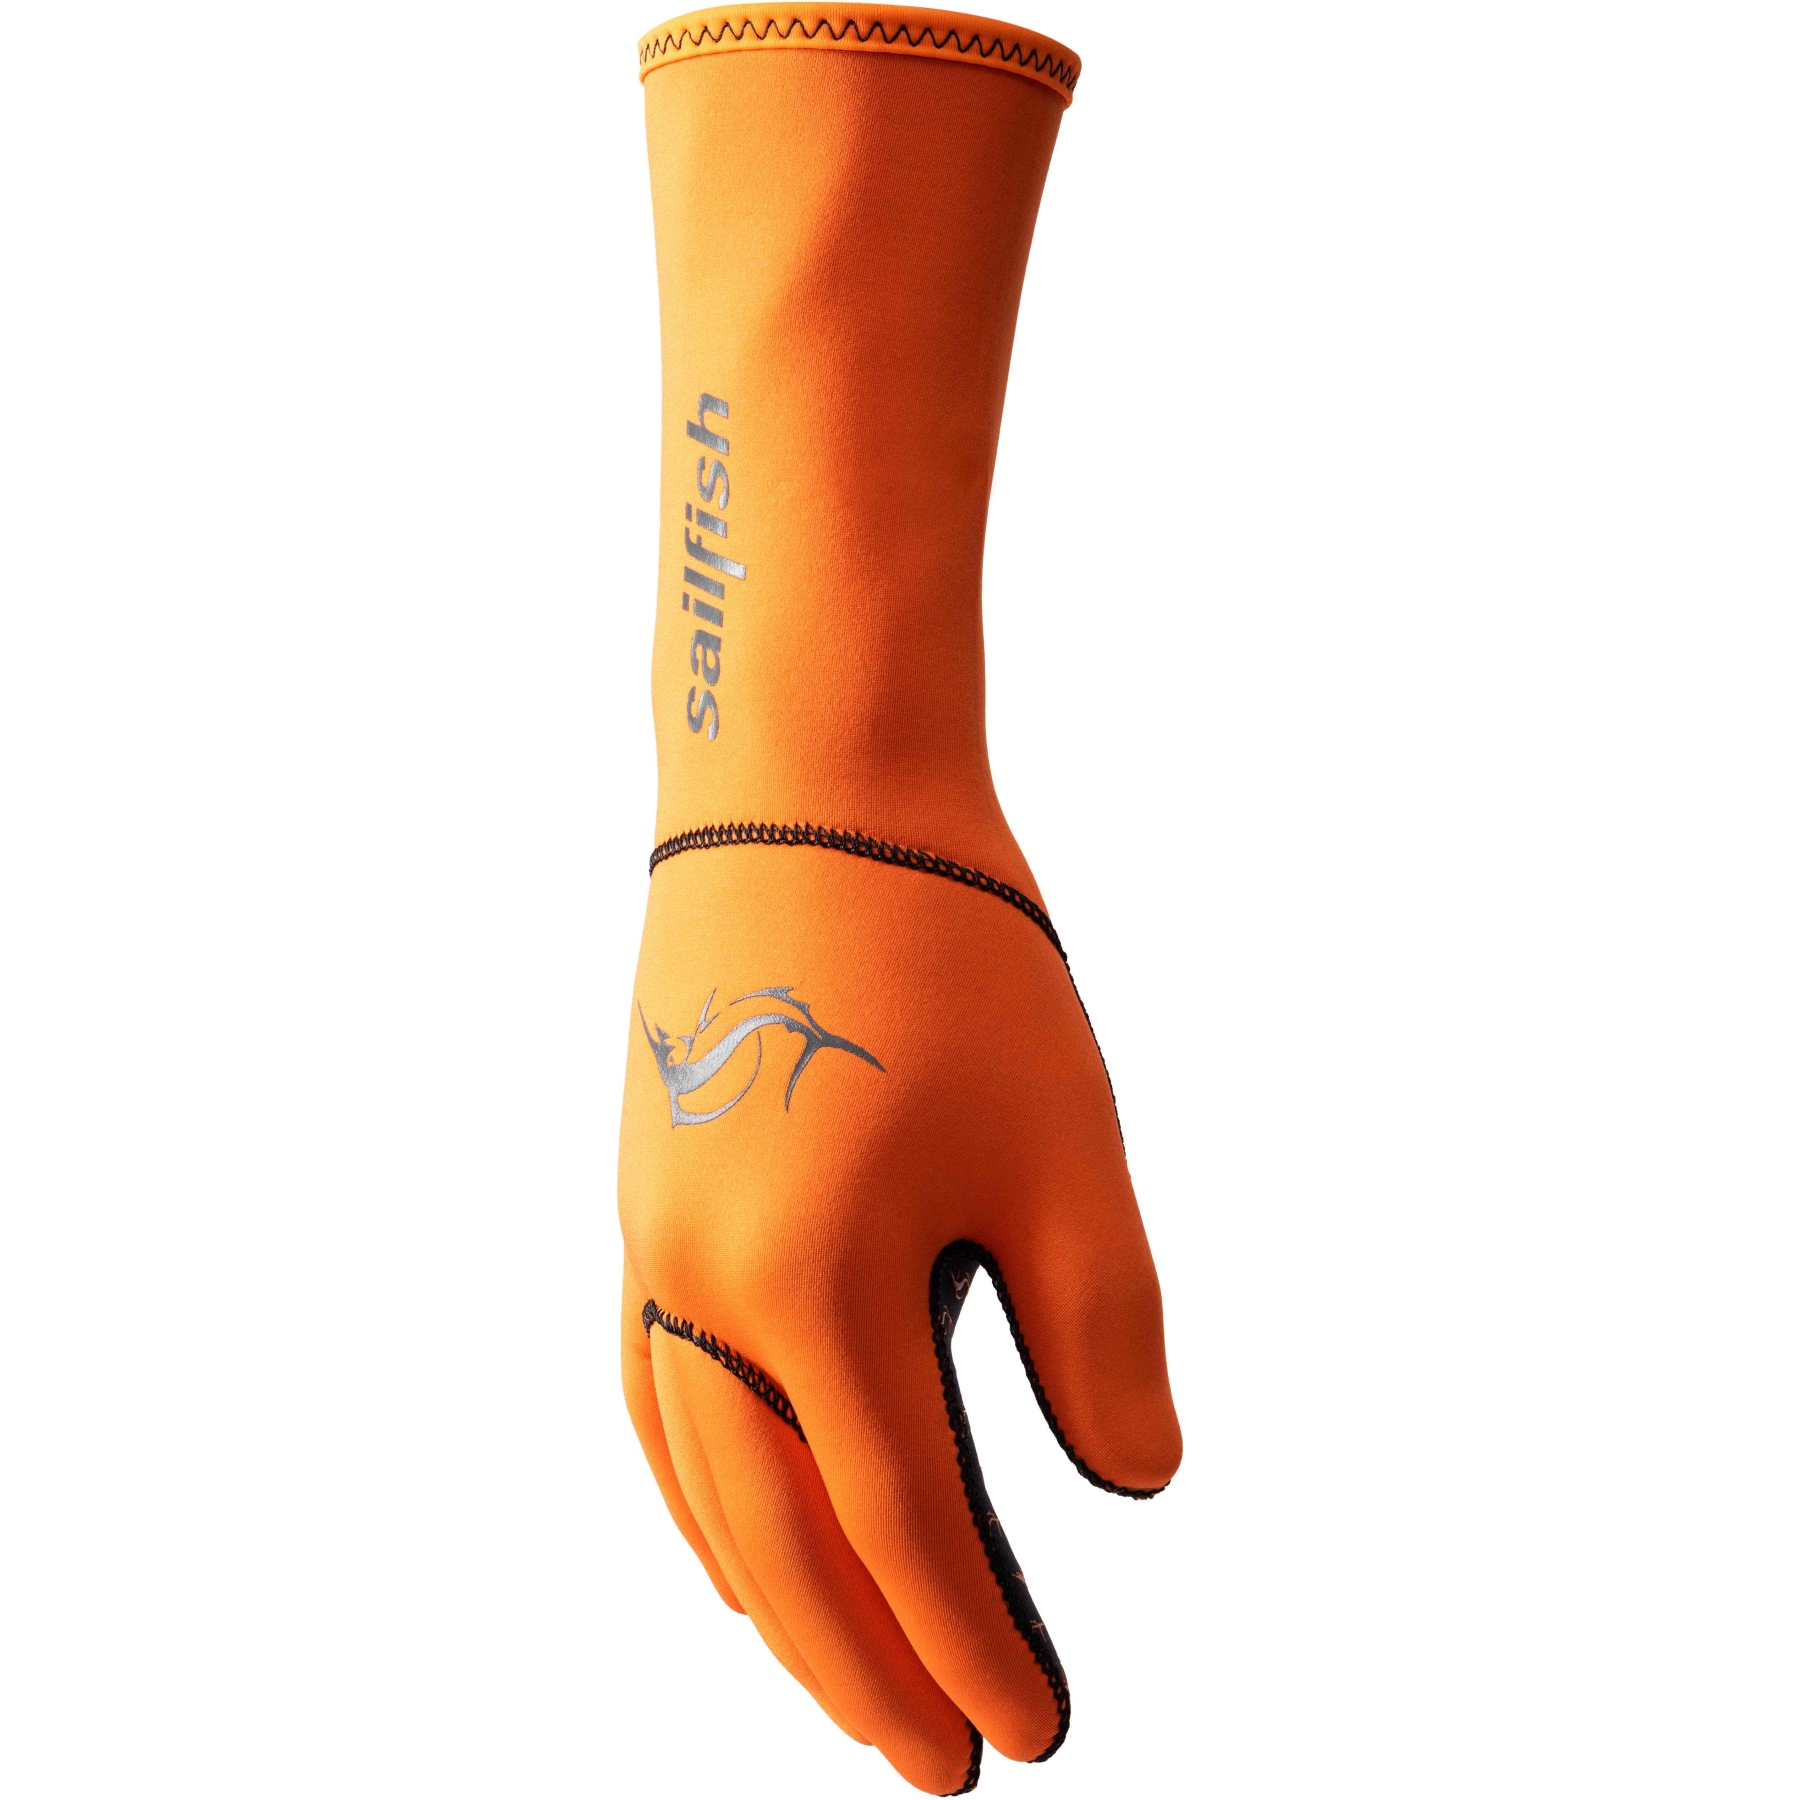 Produktbild von sailfish Neopren Handschuhe - orange